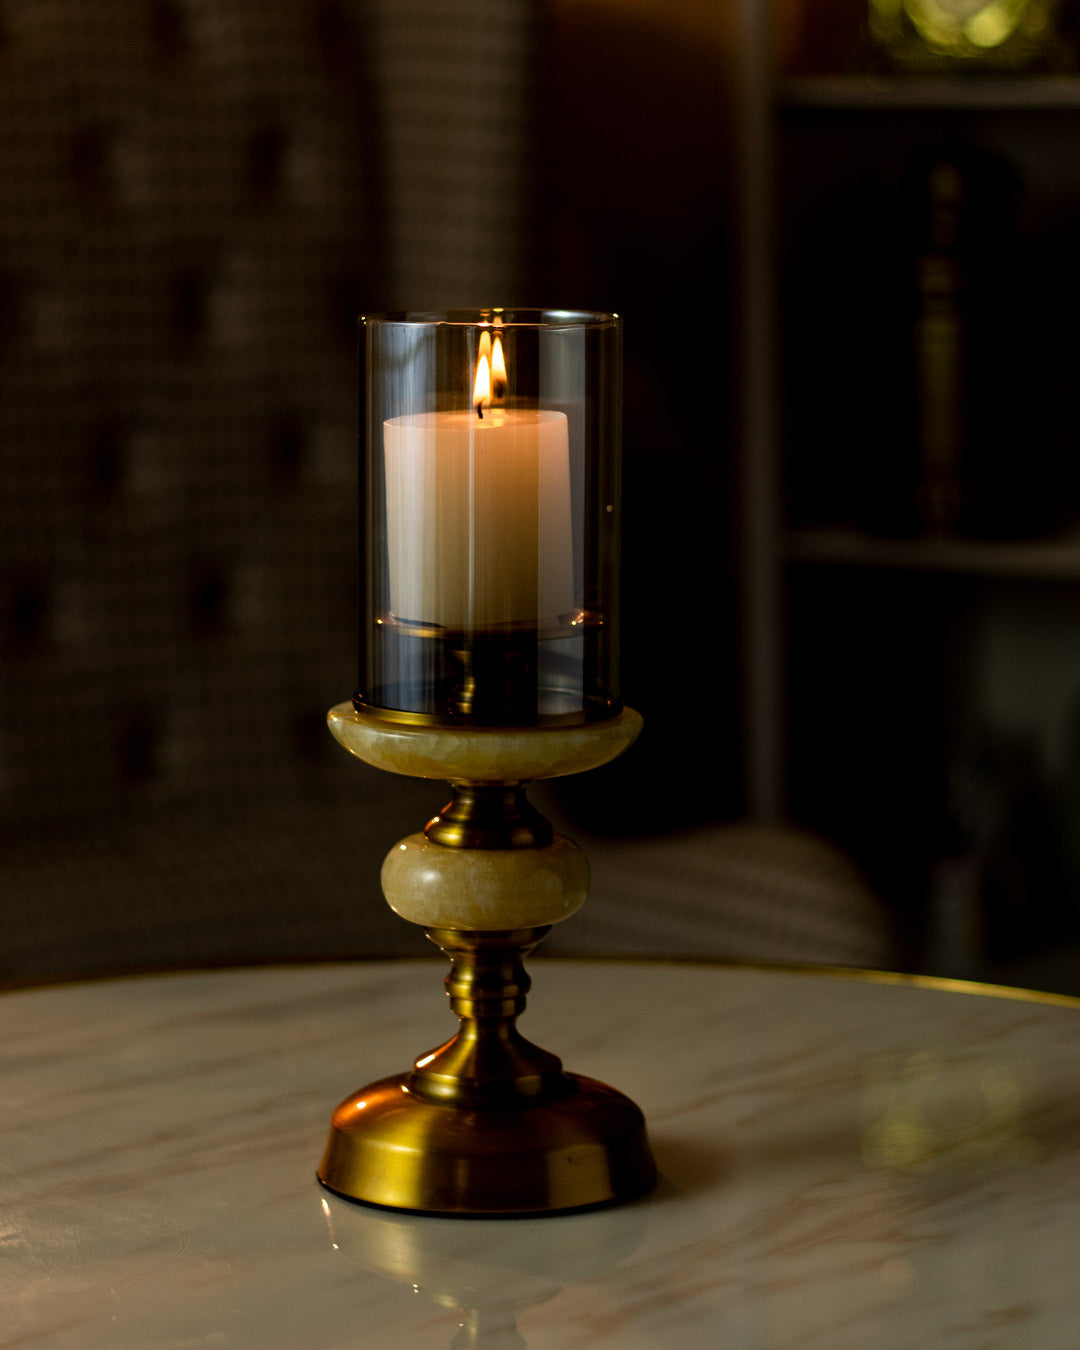 Allston Decorative Candle Holder - Small